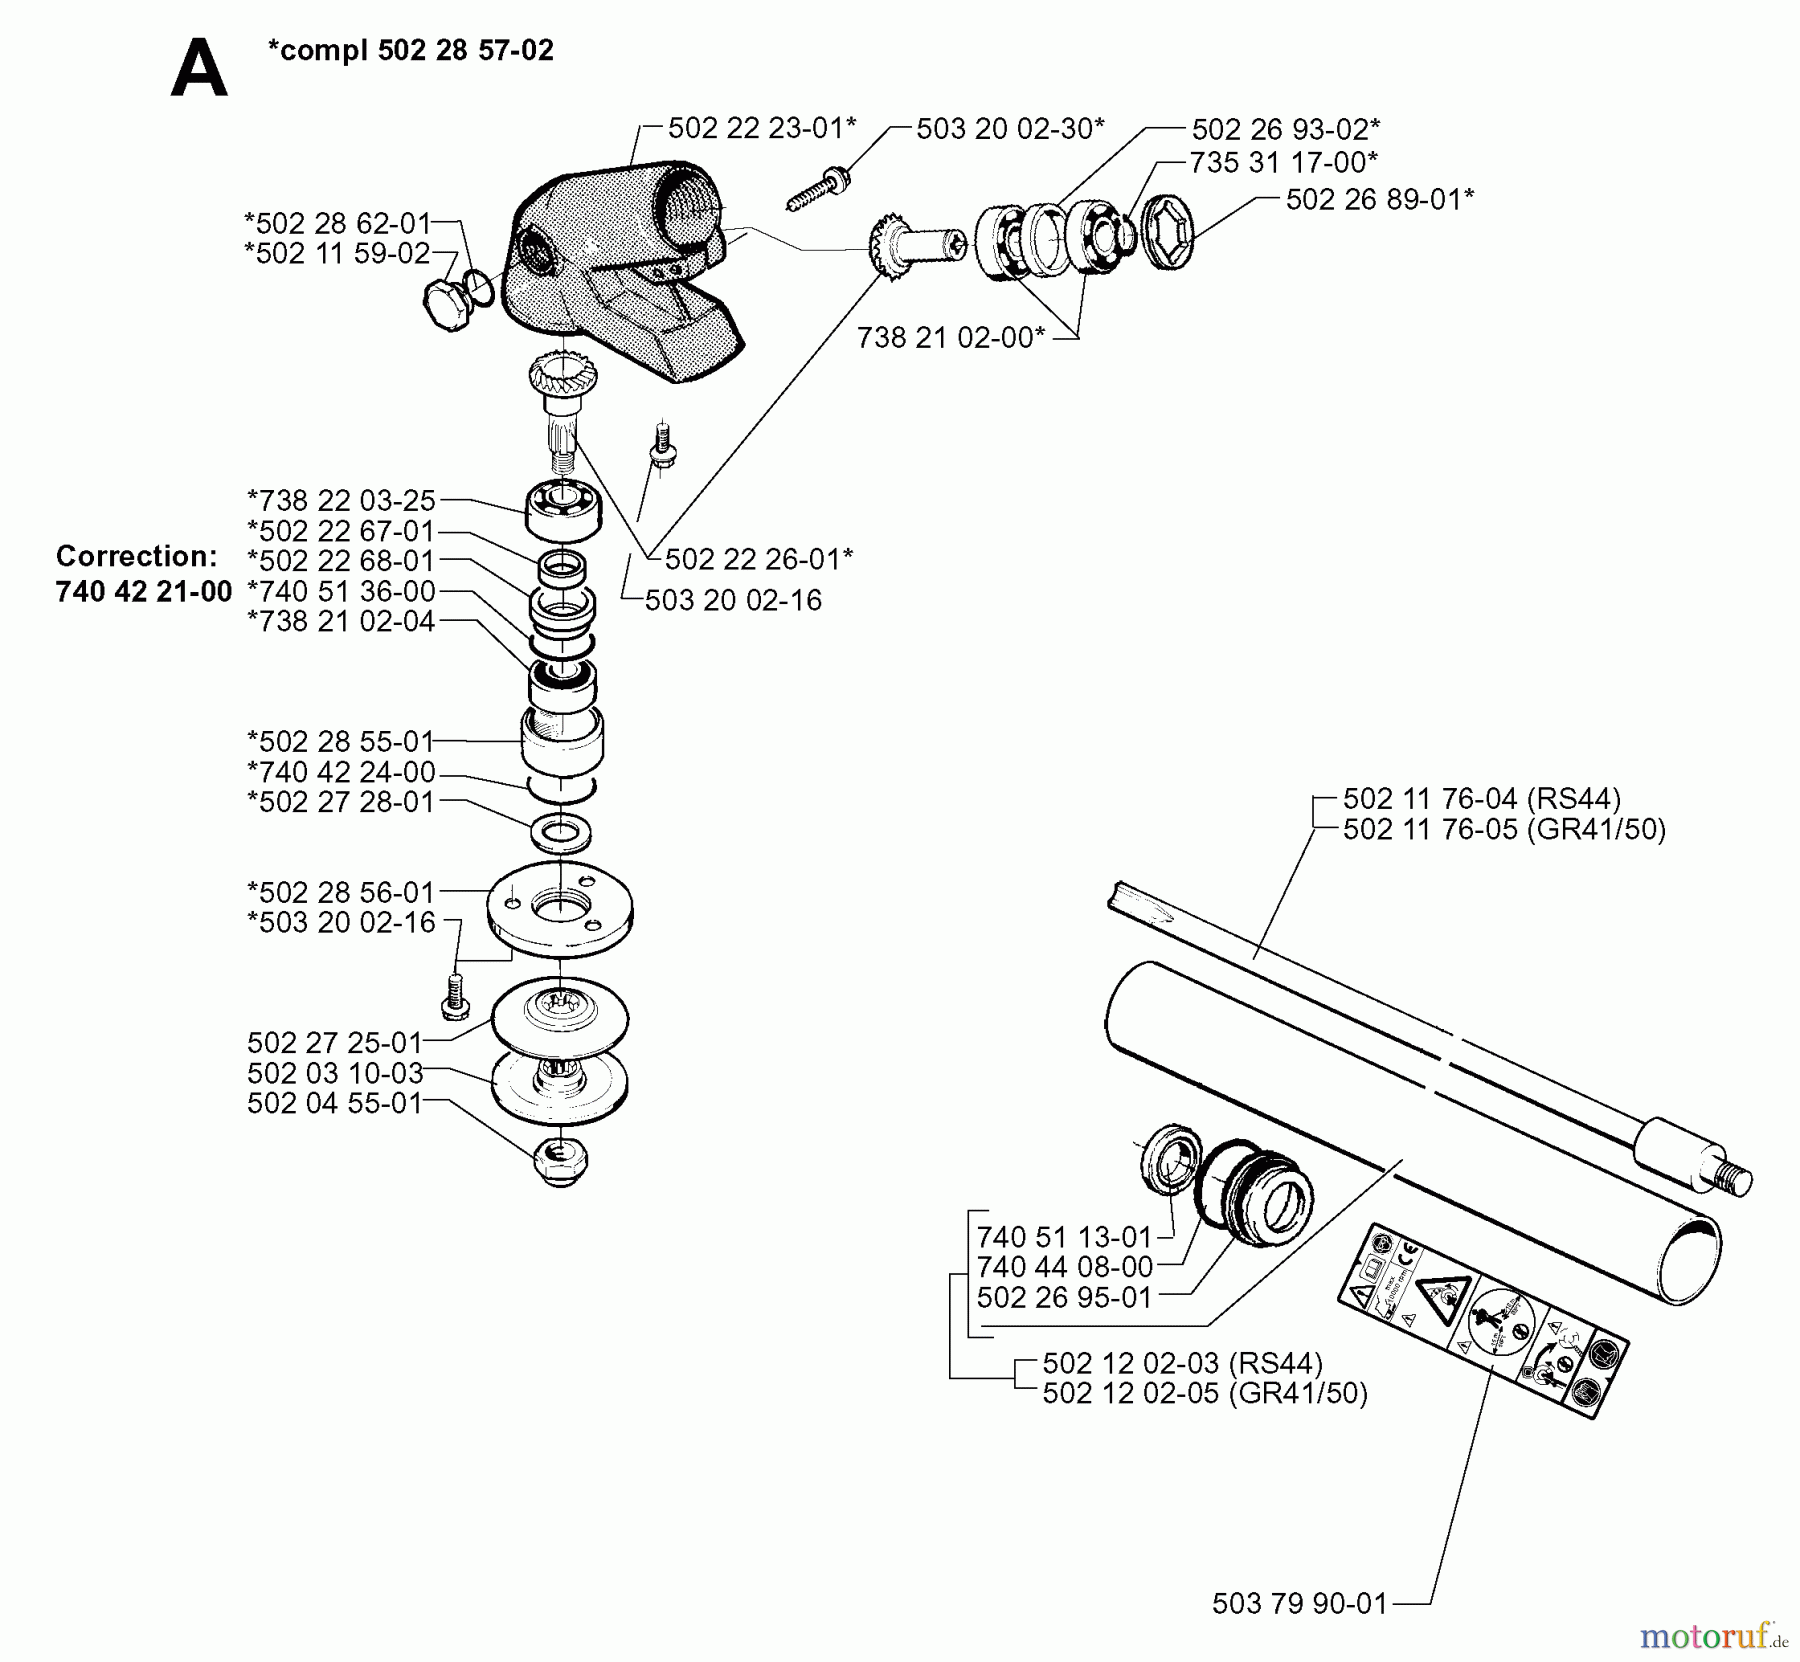  Jonsered Motorsensen, Trimmer RS44 - Jonsered String/Brush Trimmer (1998-06) BEVEL GEAR SHAFT